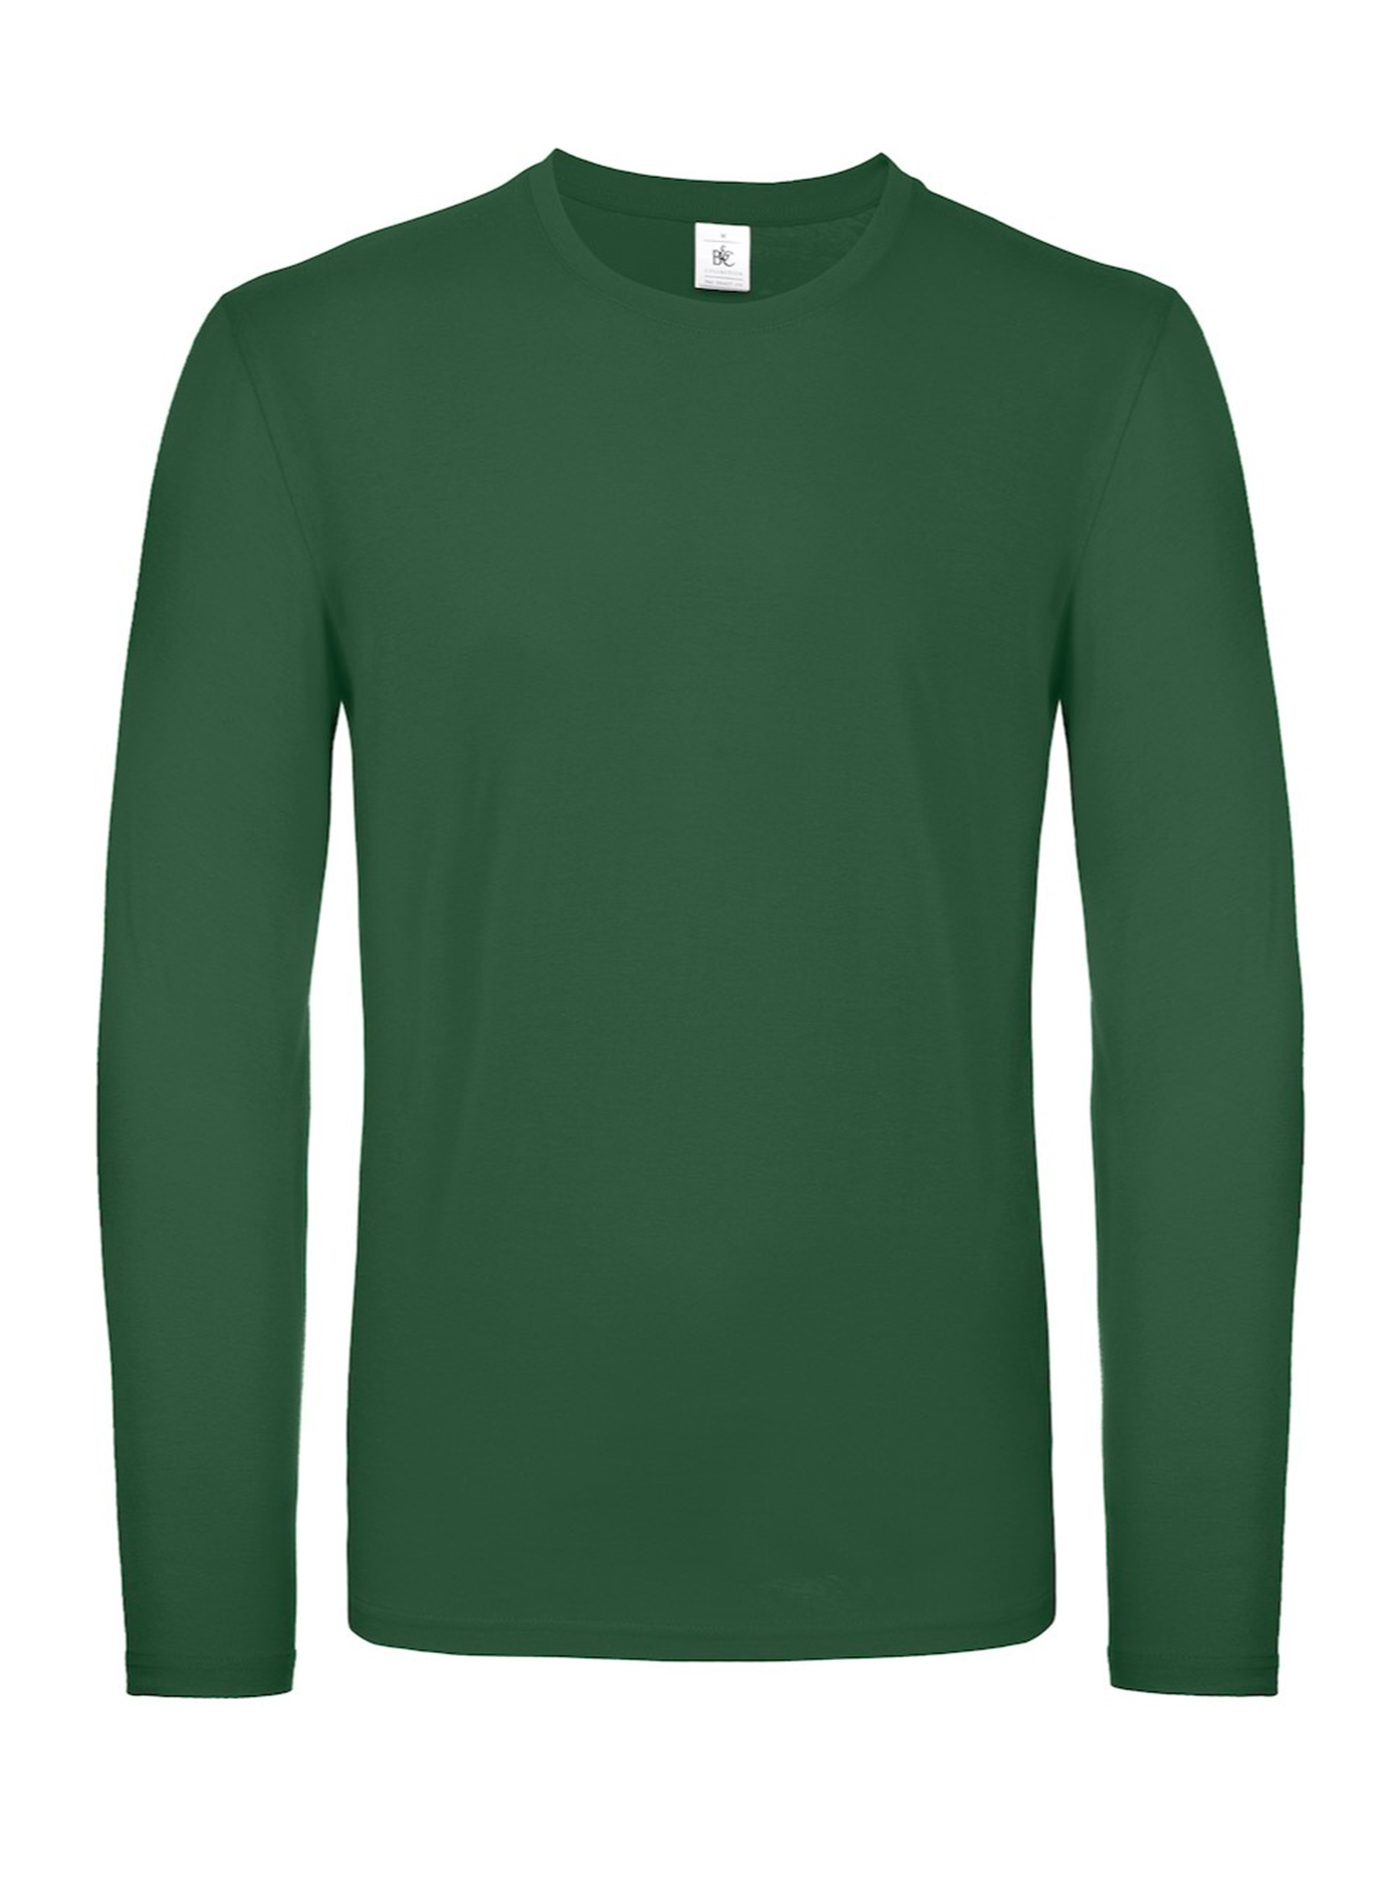 Tričko s dlouhým rukávem B&C Collection - Lahvově zelená S